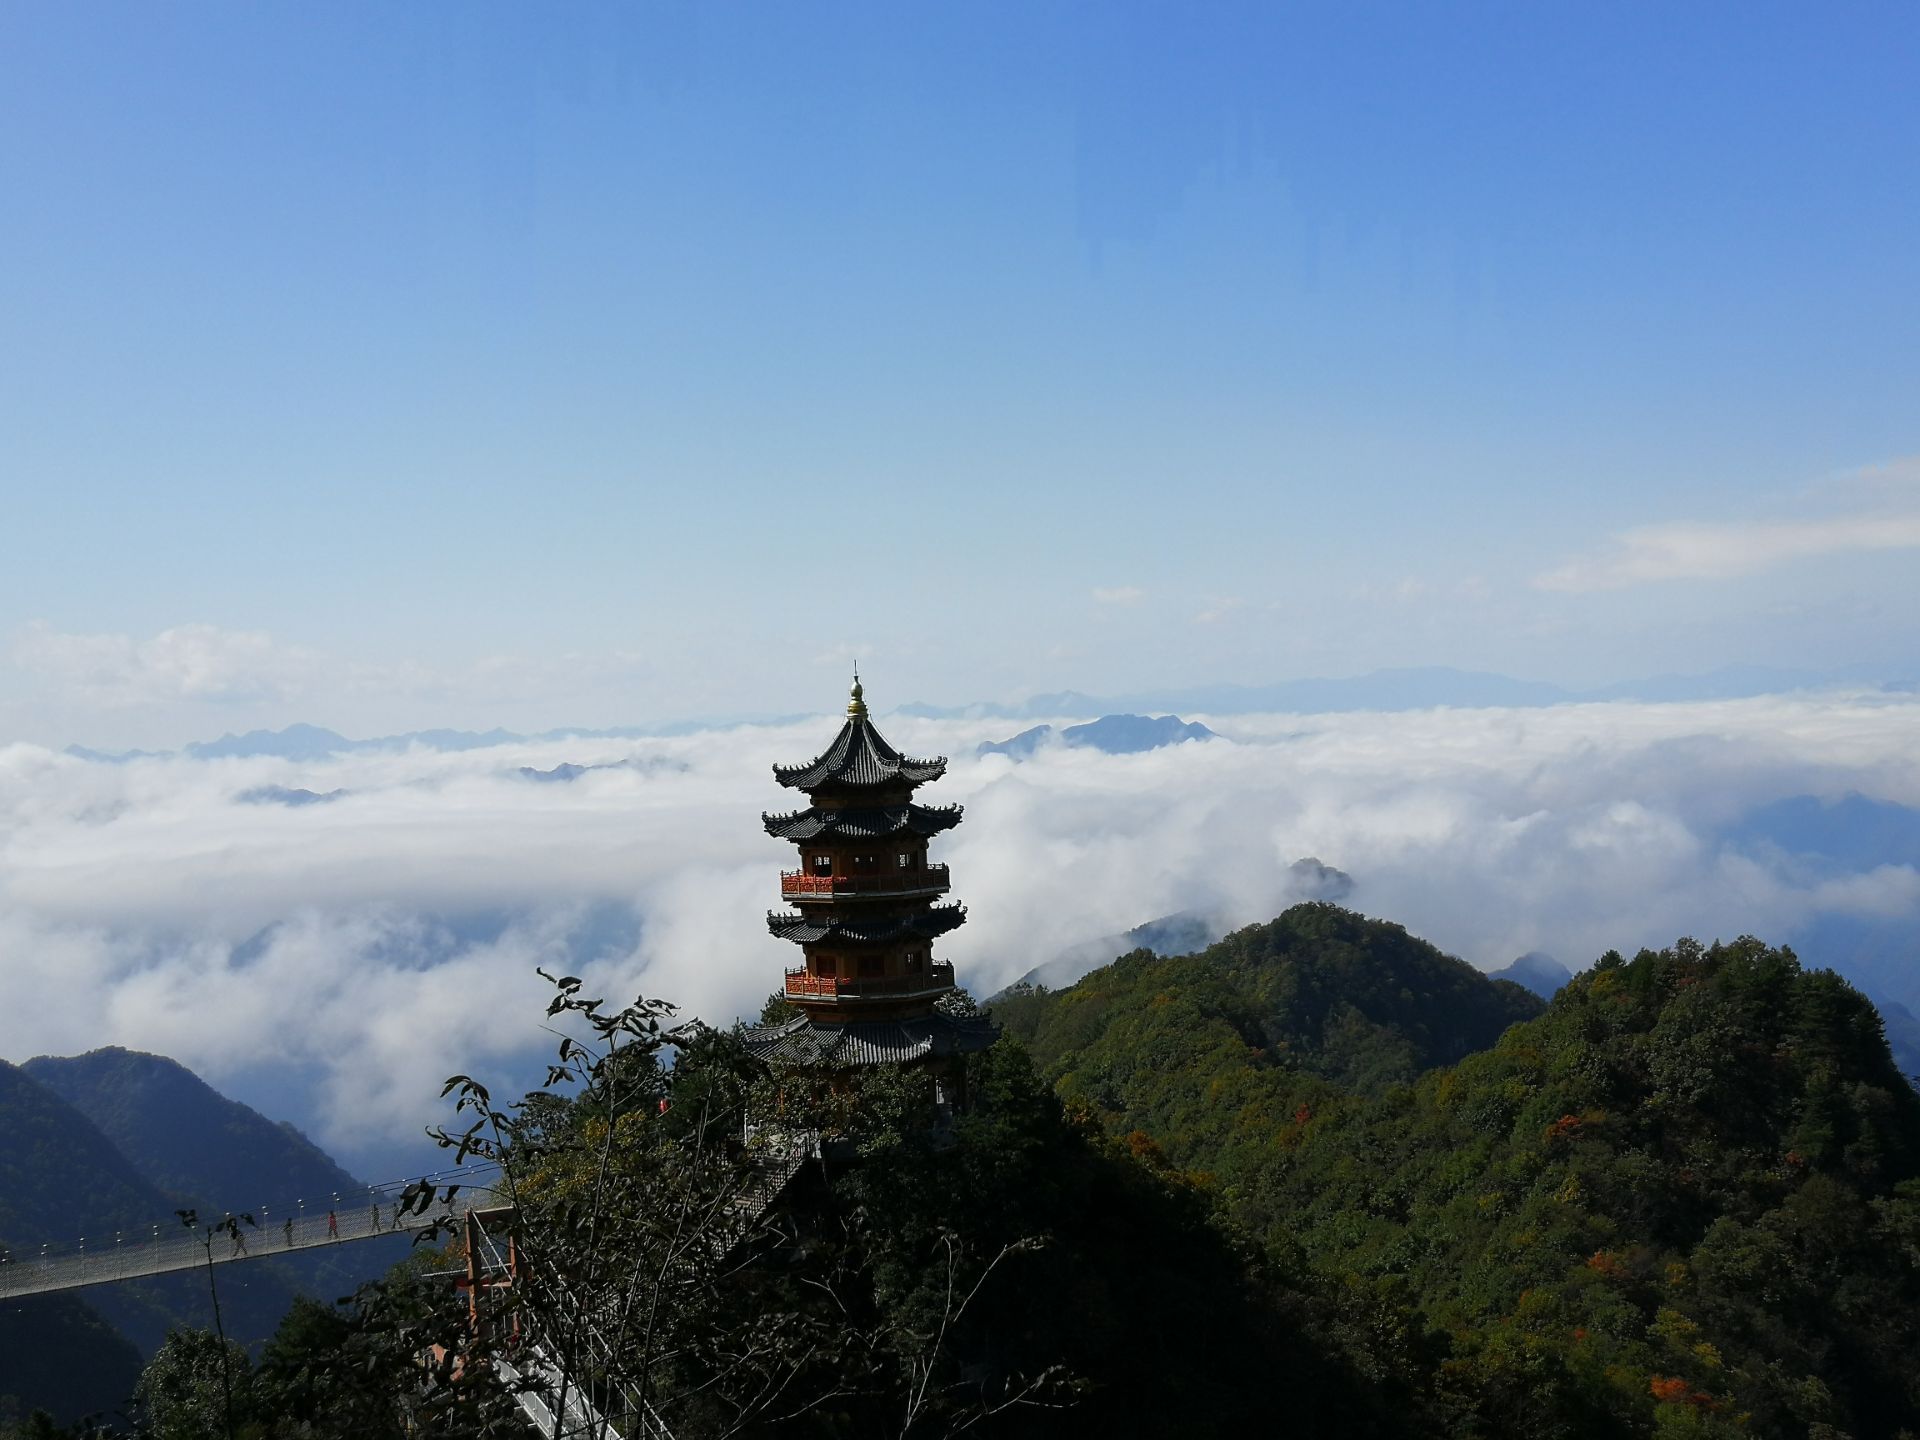 【携程攻略】镇安塔云山景区景点,塔云山是大秦岭里很秀丽的一座山峰